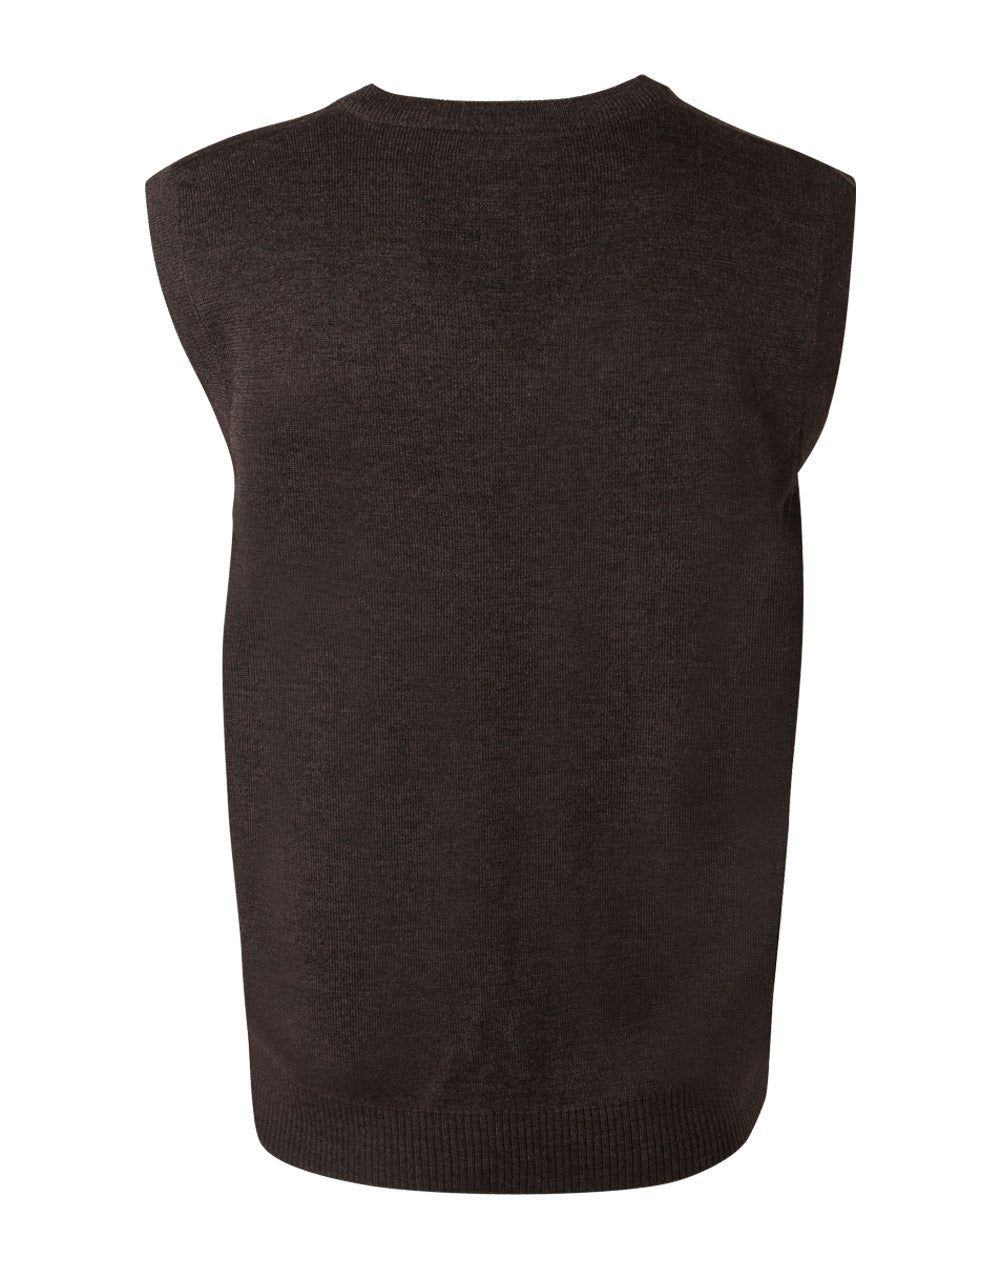 Vest wool/acrylic blend in grey in back